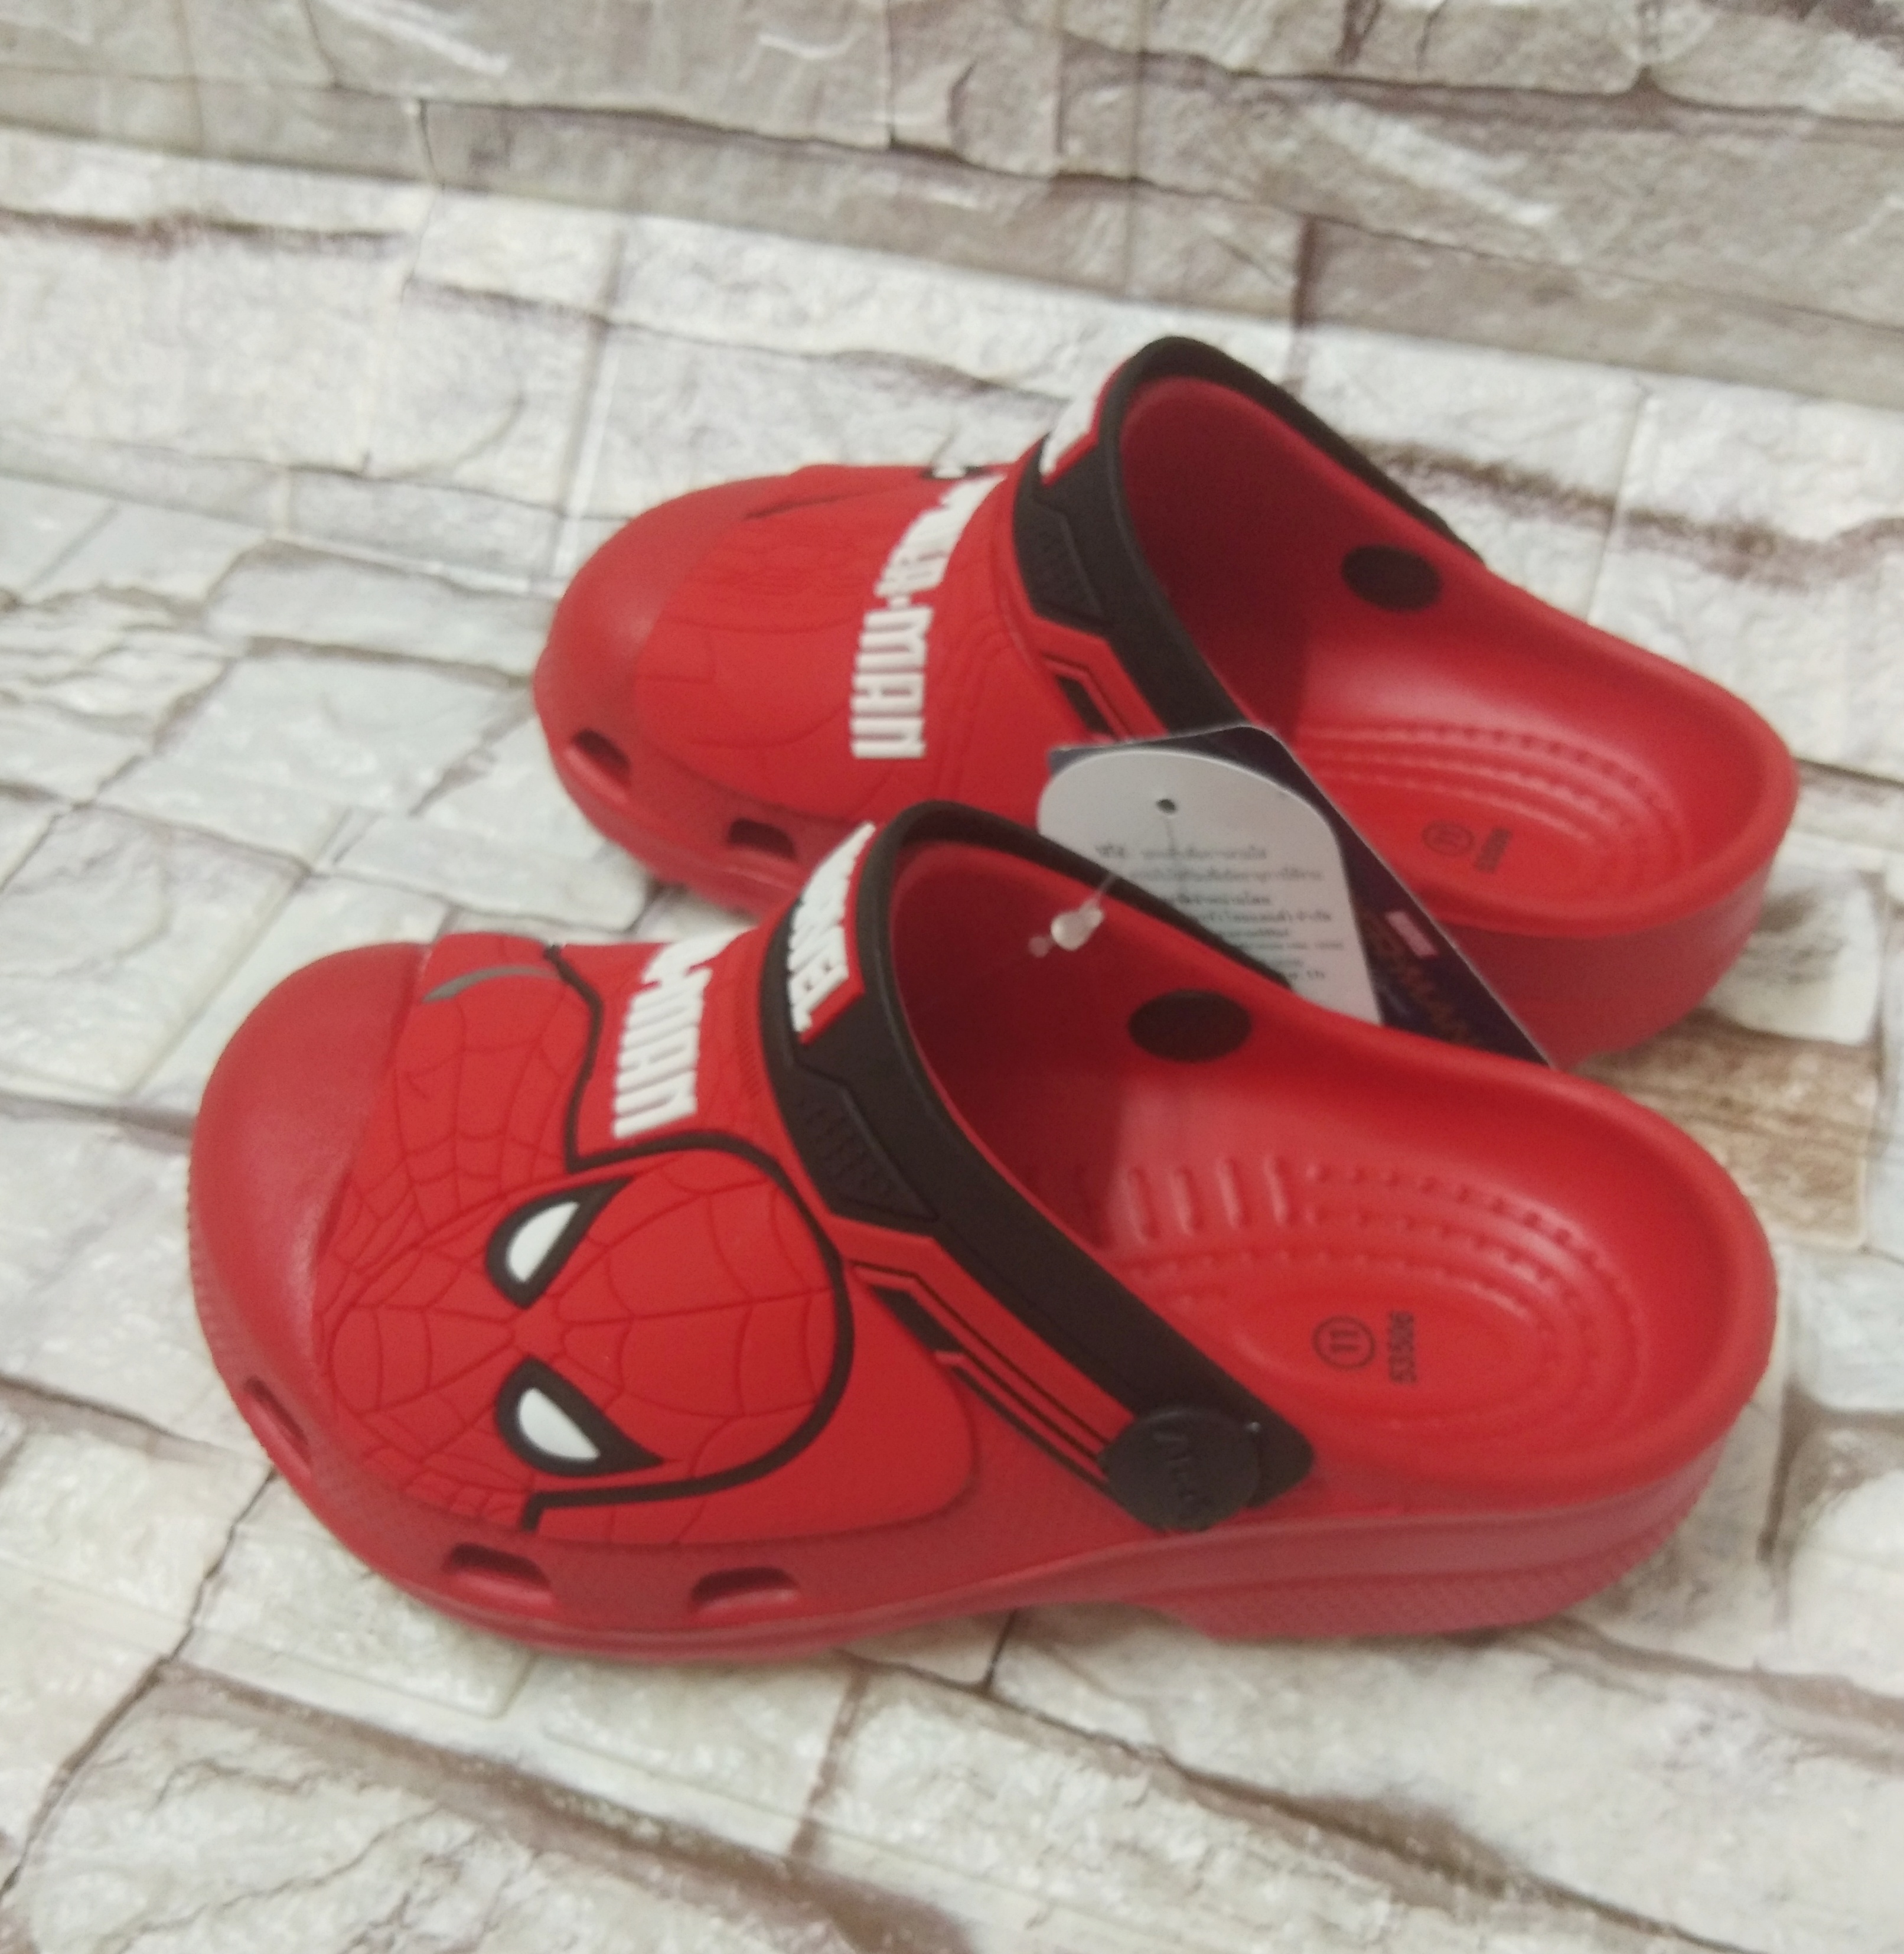 SCPPLaza รองเท้าเด็ก รองเท้าหัวโต ทรง crocs Adda Marvel Spiderman ลิขสิทธิ์แท้ 100% รุ่น 53506 ลดราคาพิเศษ ราคาดีเวอร์